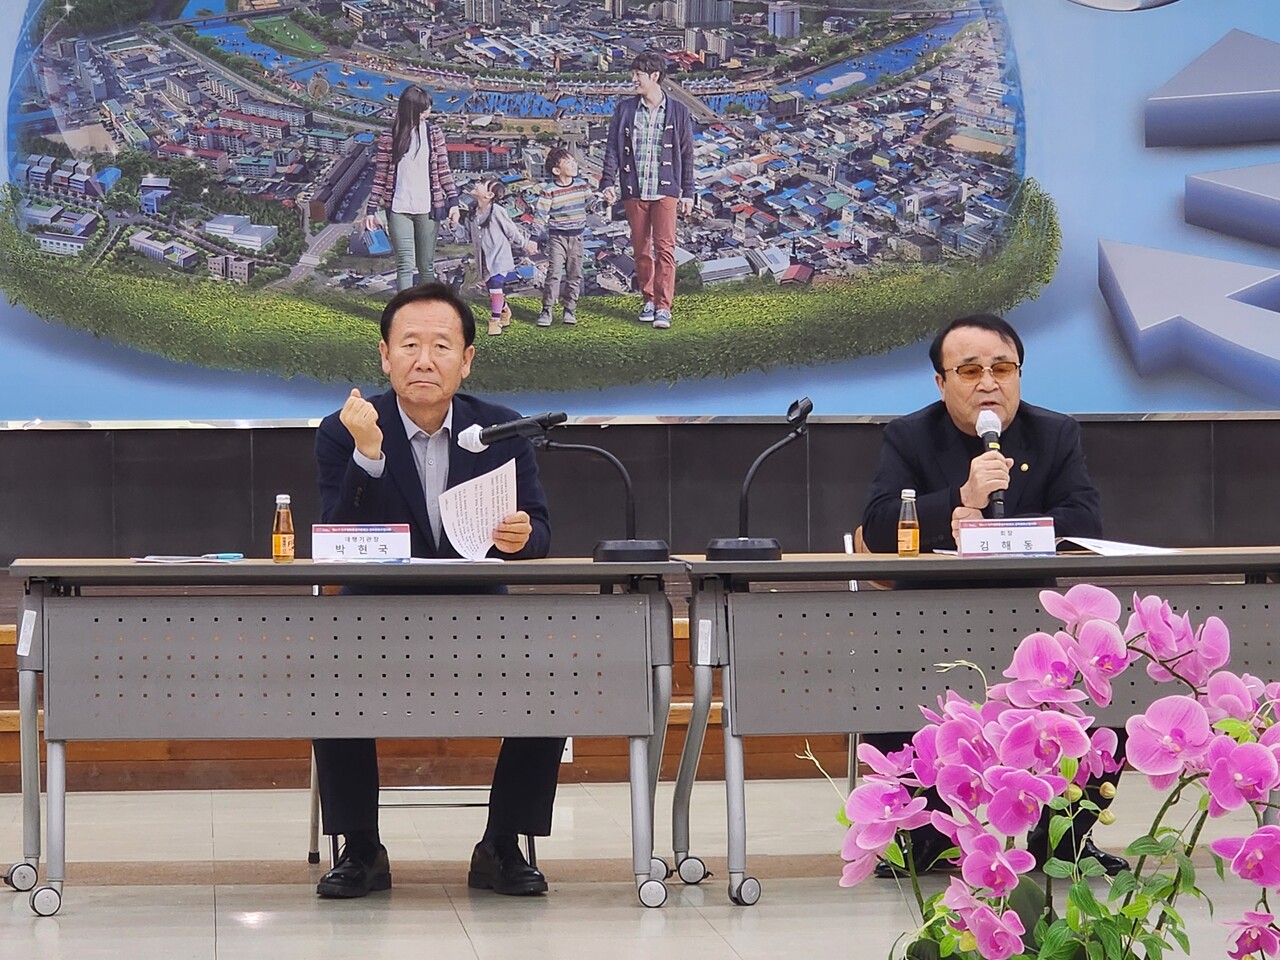 김해동 협의회장(오른쪽)은 박현국 봉화군수(왼쪽)이 참석한 가운데 개회사를 하고 있다.